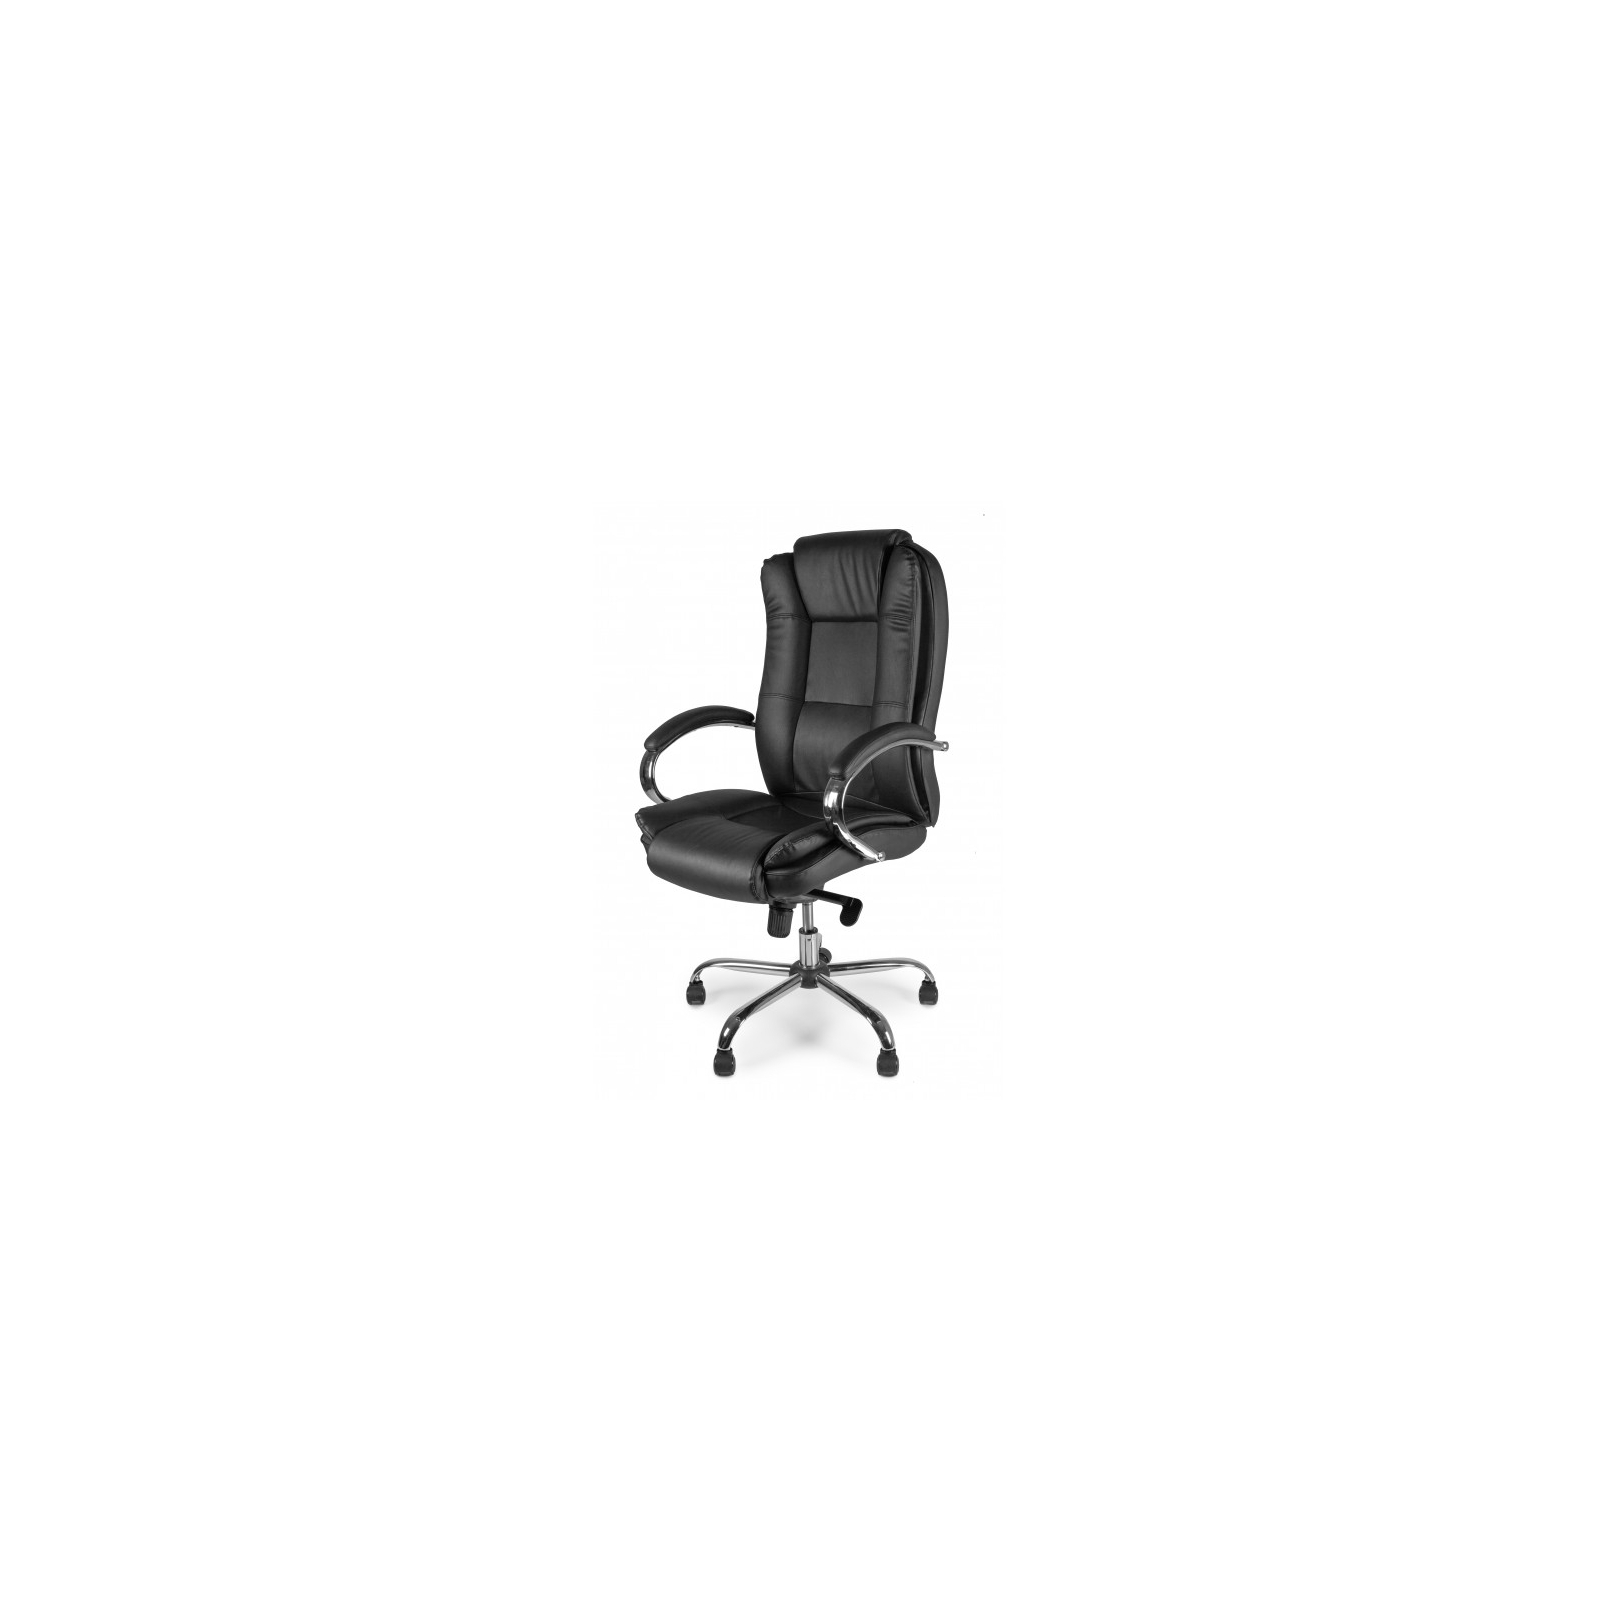 Офисное кресло Barsky Soft Leather MultiBlock Сhrom (Soft-05) изображение 2